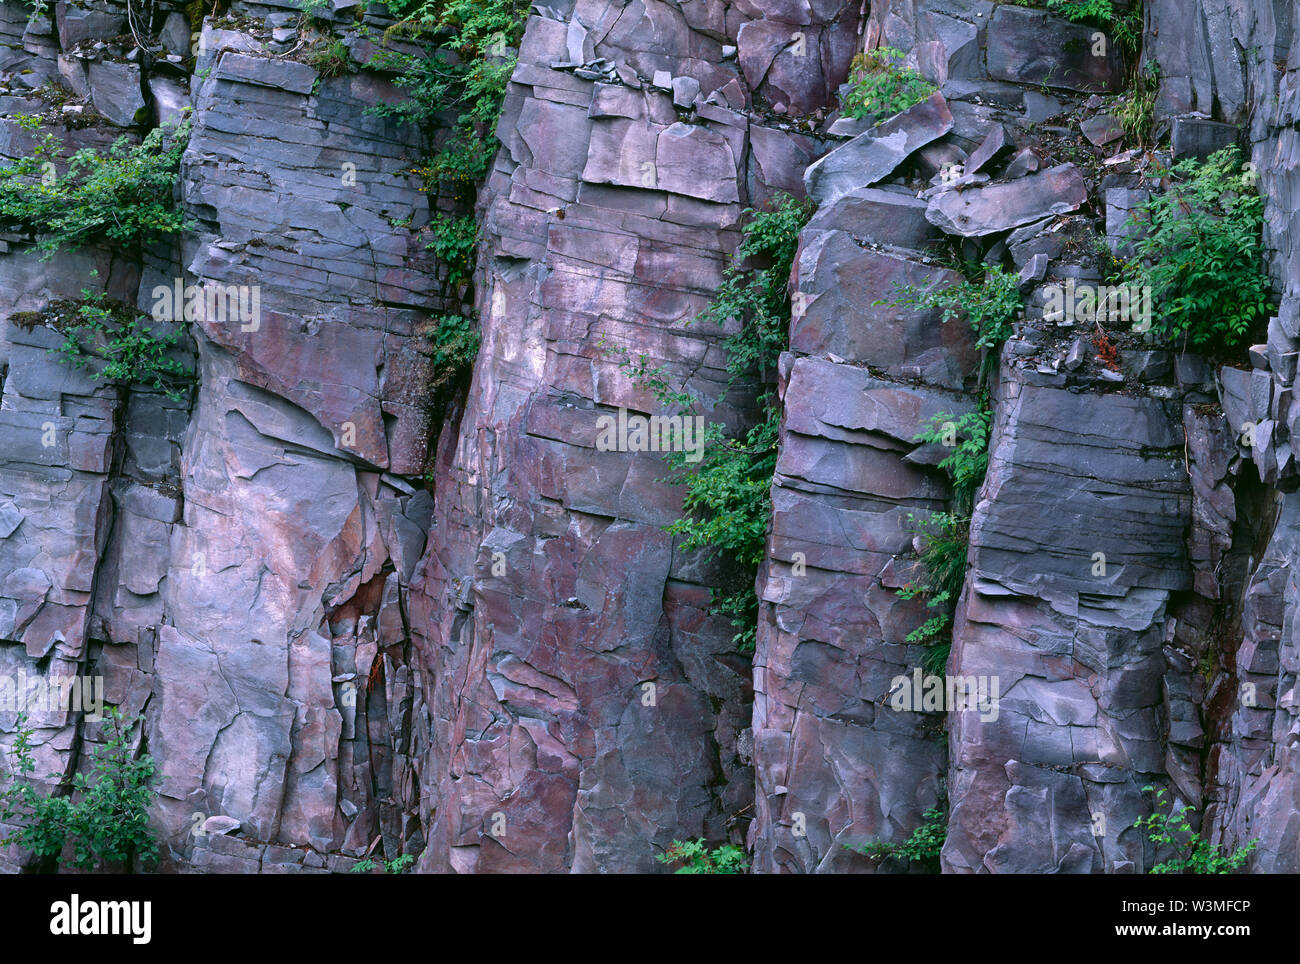 USA, Washington, Mt. Rainier National Park, plantes dispersées dans les roches fracturées, gain de mur dans la région de Stevens Canyon. Banque D'Images